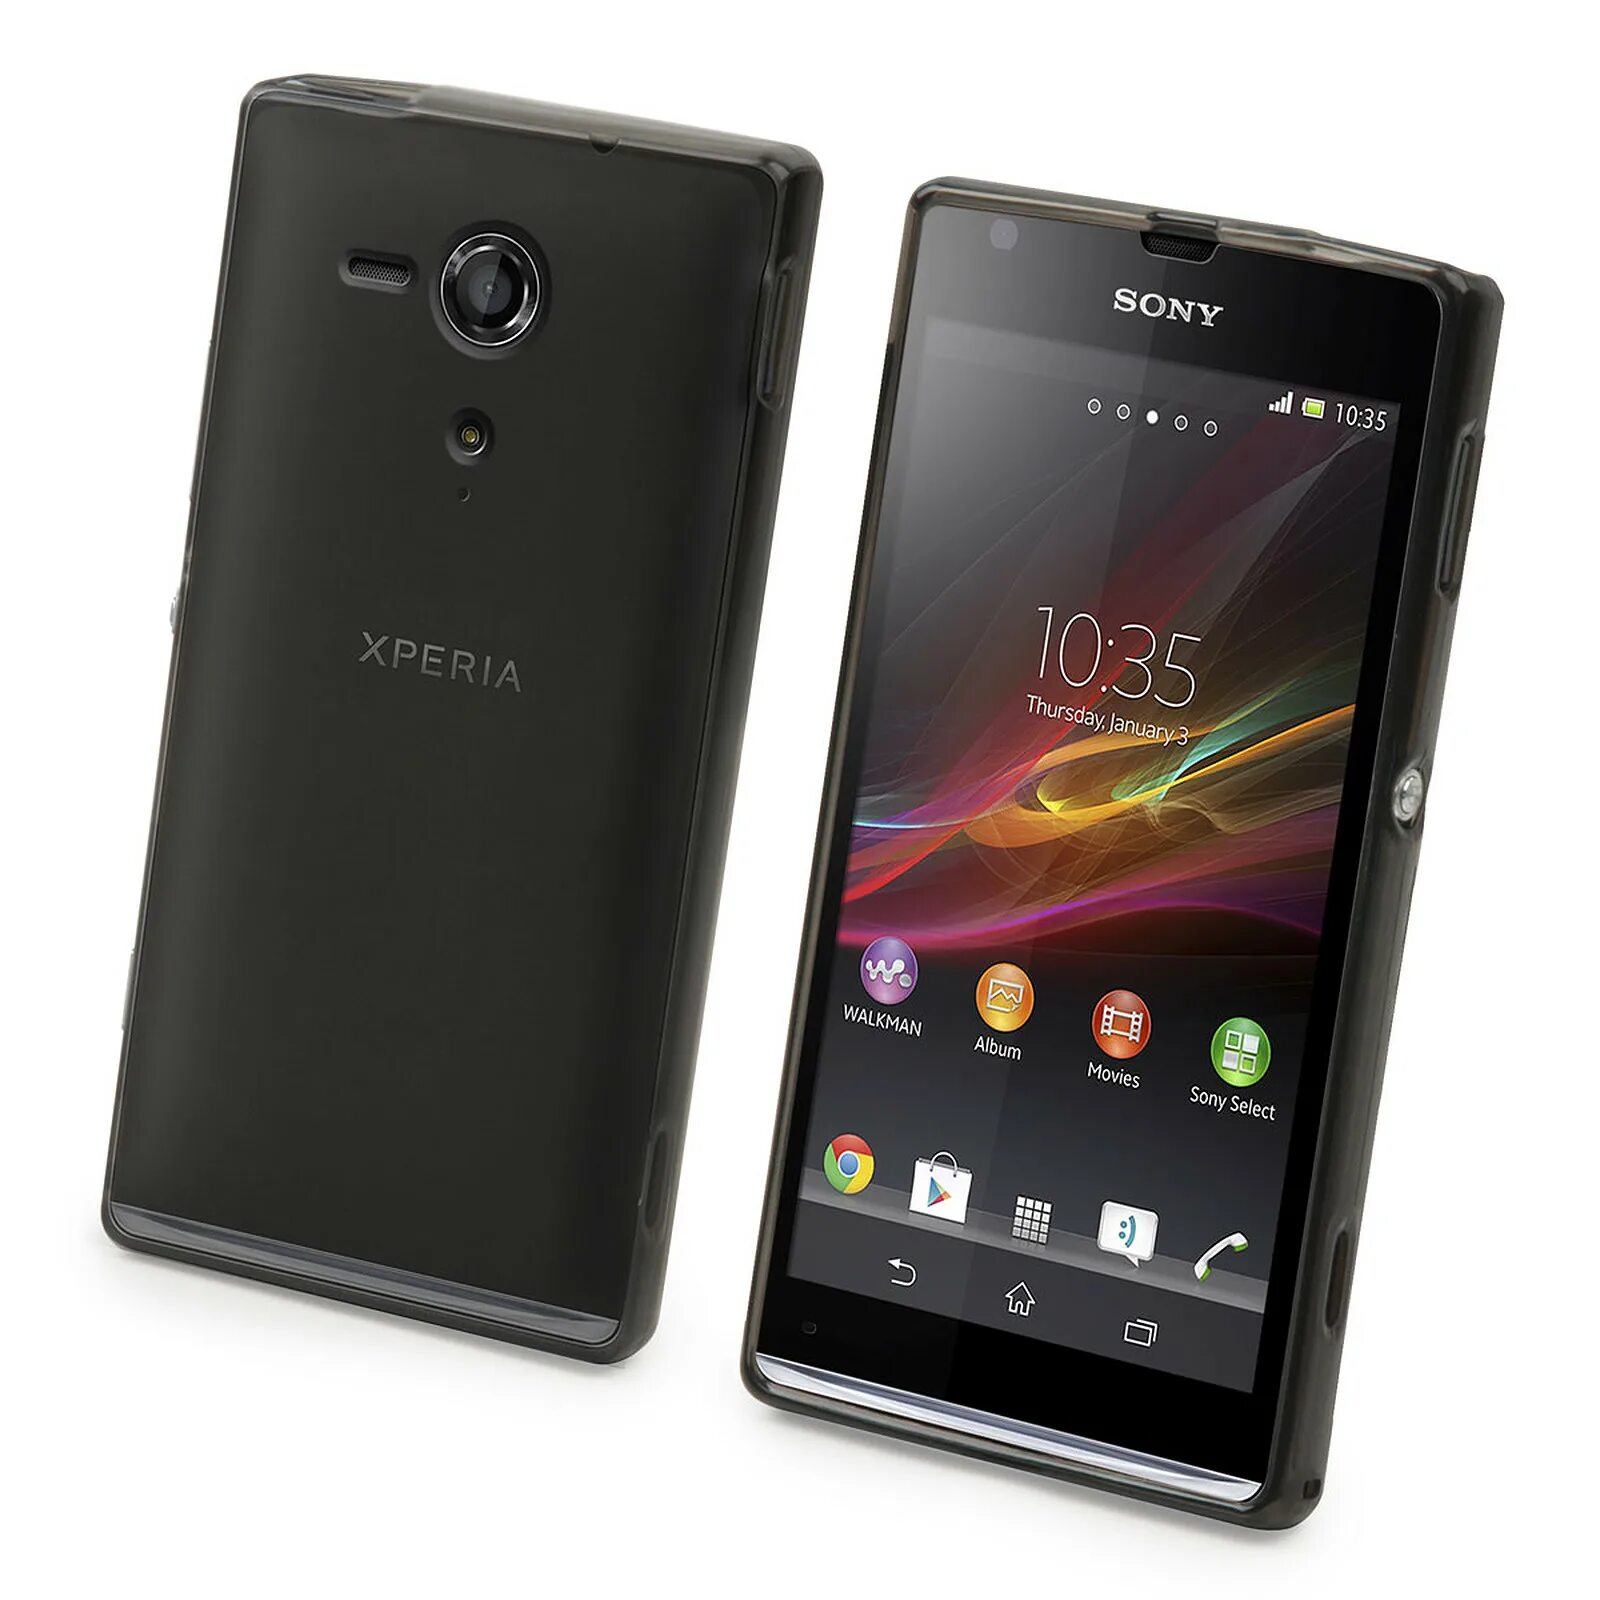 Xperia sp. Sony Xperia c6603. Sony Xperia c6602. Sony Xperia SP. Sony Xperia z c6602.